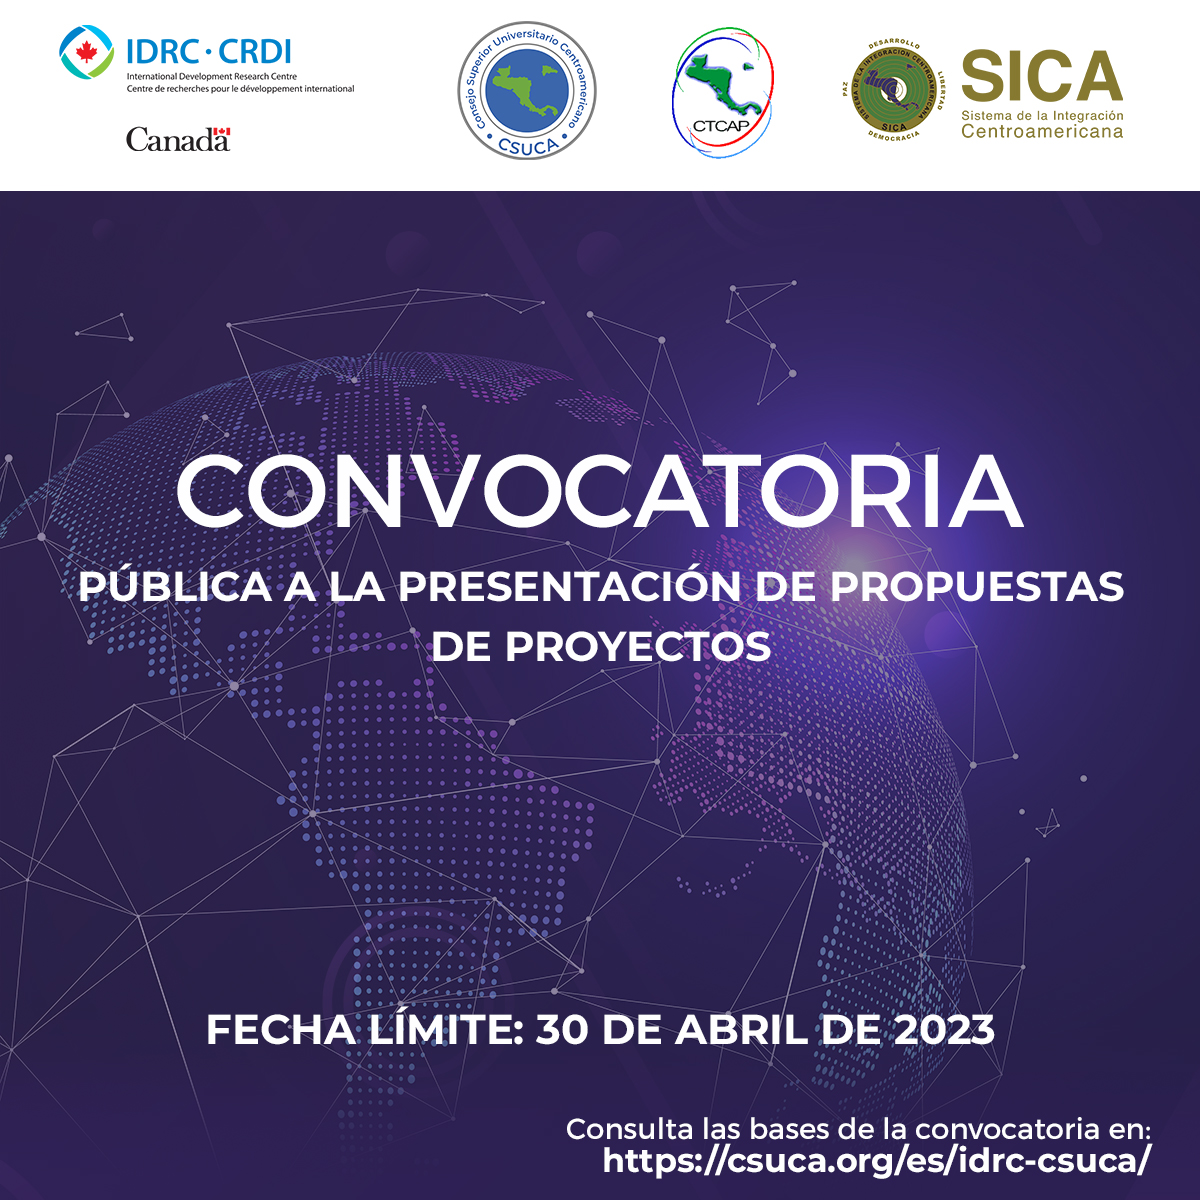 Convocatoria pública a la presentación de propuestas para el proyecto “Fortaleciendo sistemas inclusivos de ciencia e innovación en América Latina a través de una red de investigación colaborativa”